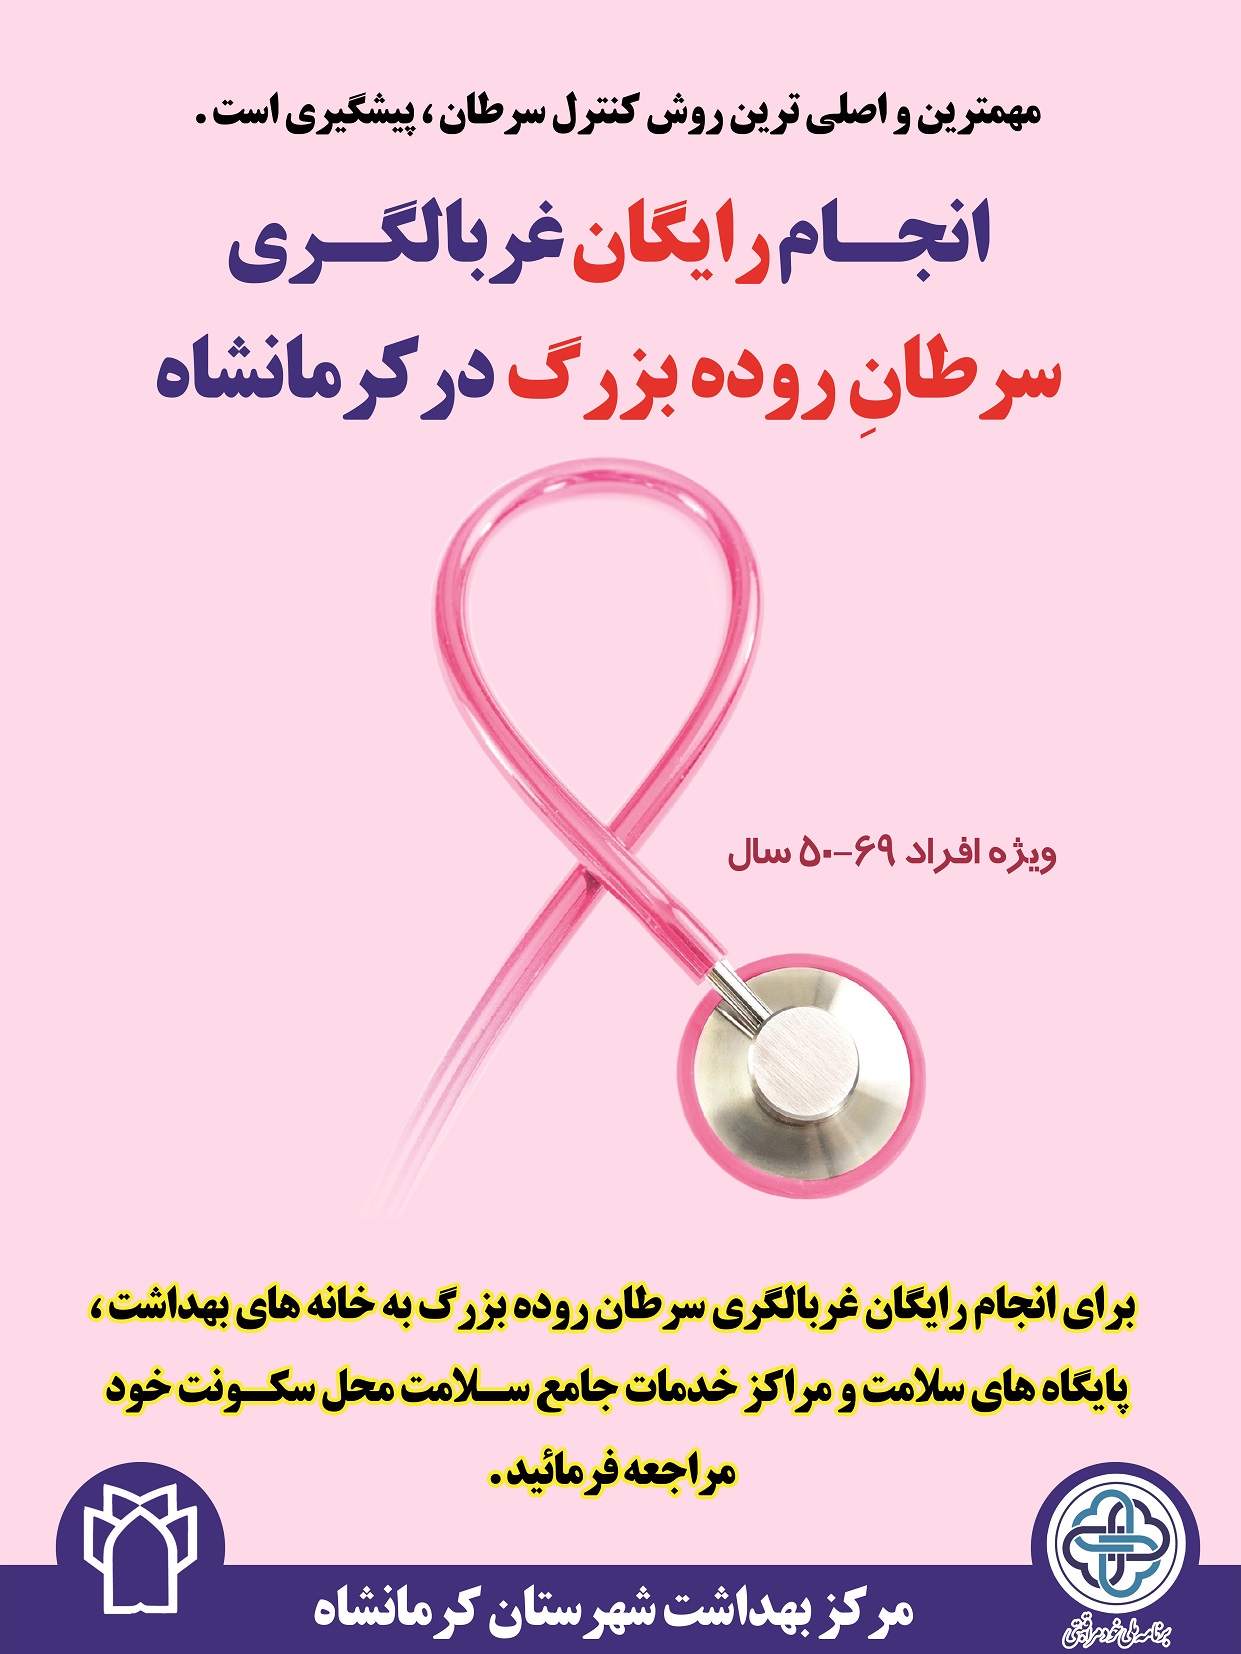 انجام رایگان غربالگری سرطان پستان در کرمانشاه